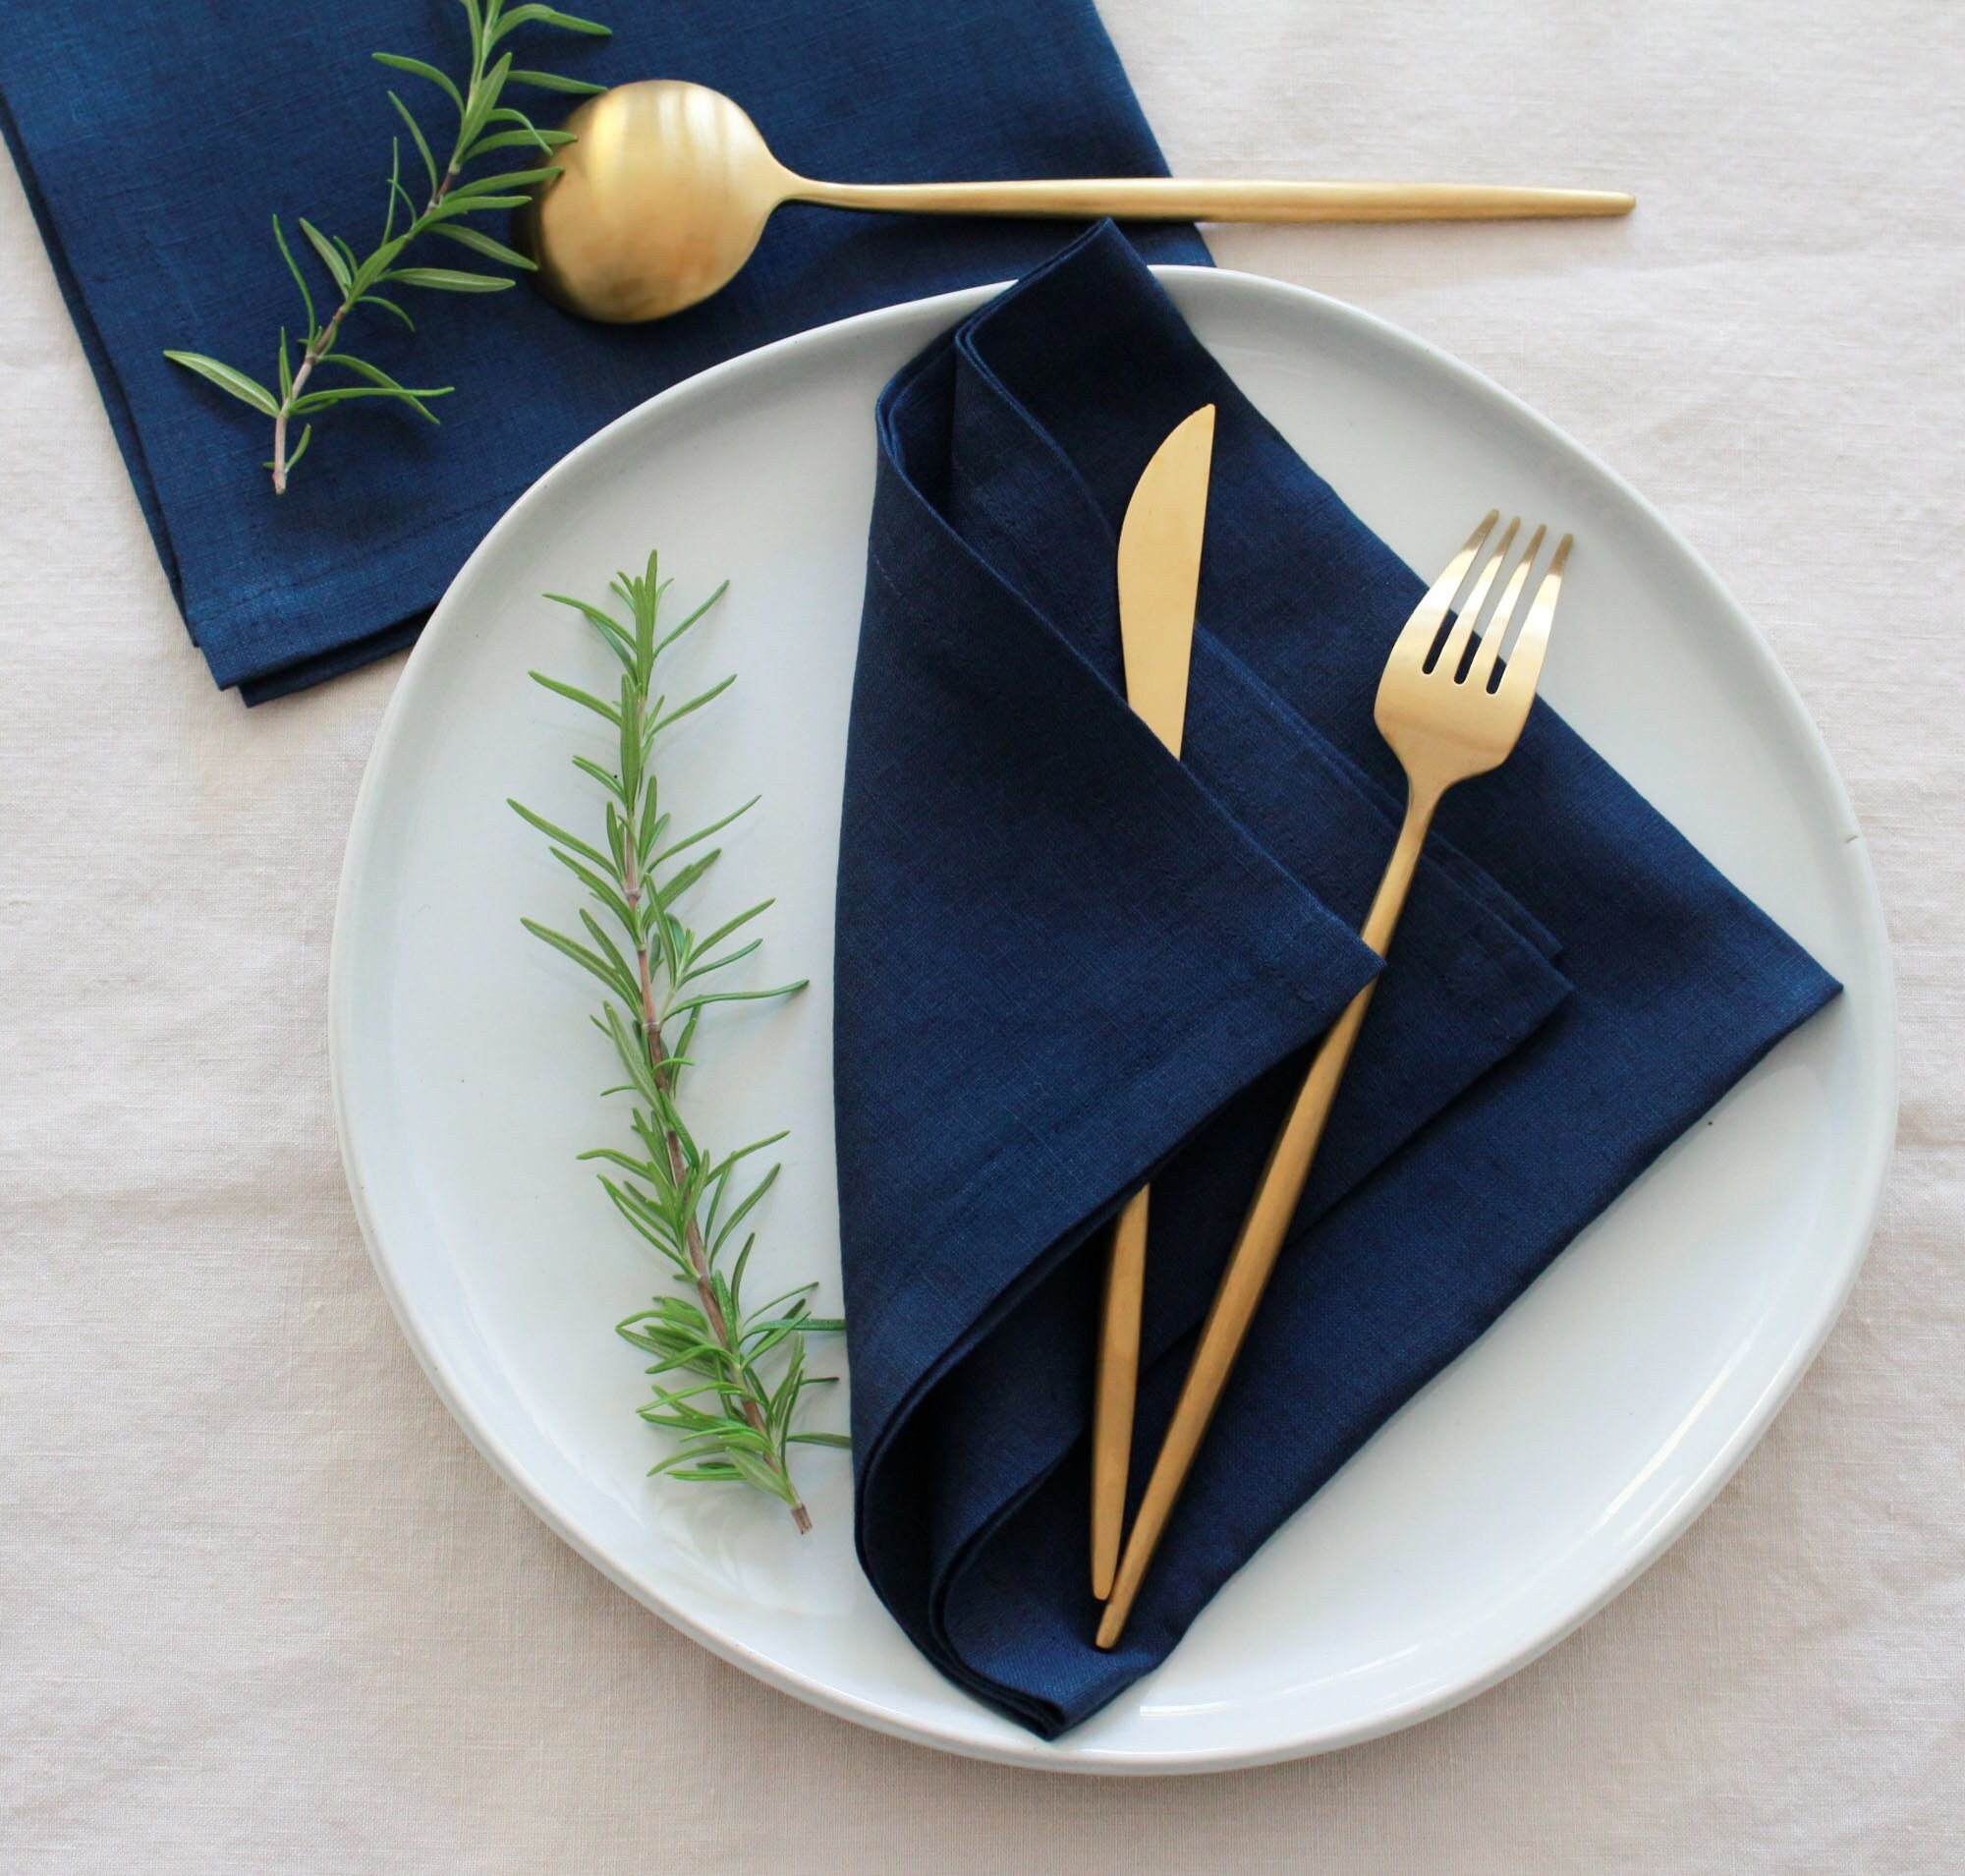 Reversible Navy Blue & White Linen Dinner Napkins | 20 x 20 Inch, Set of 4